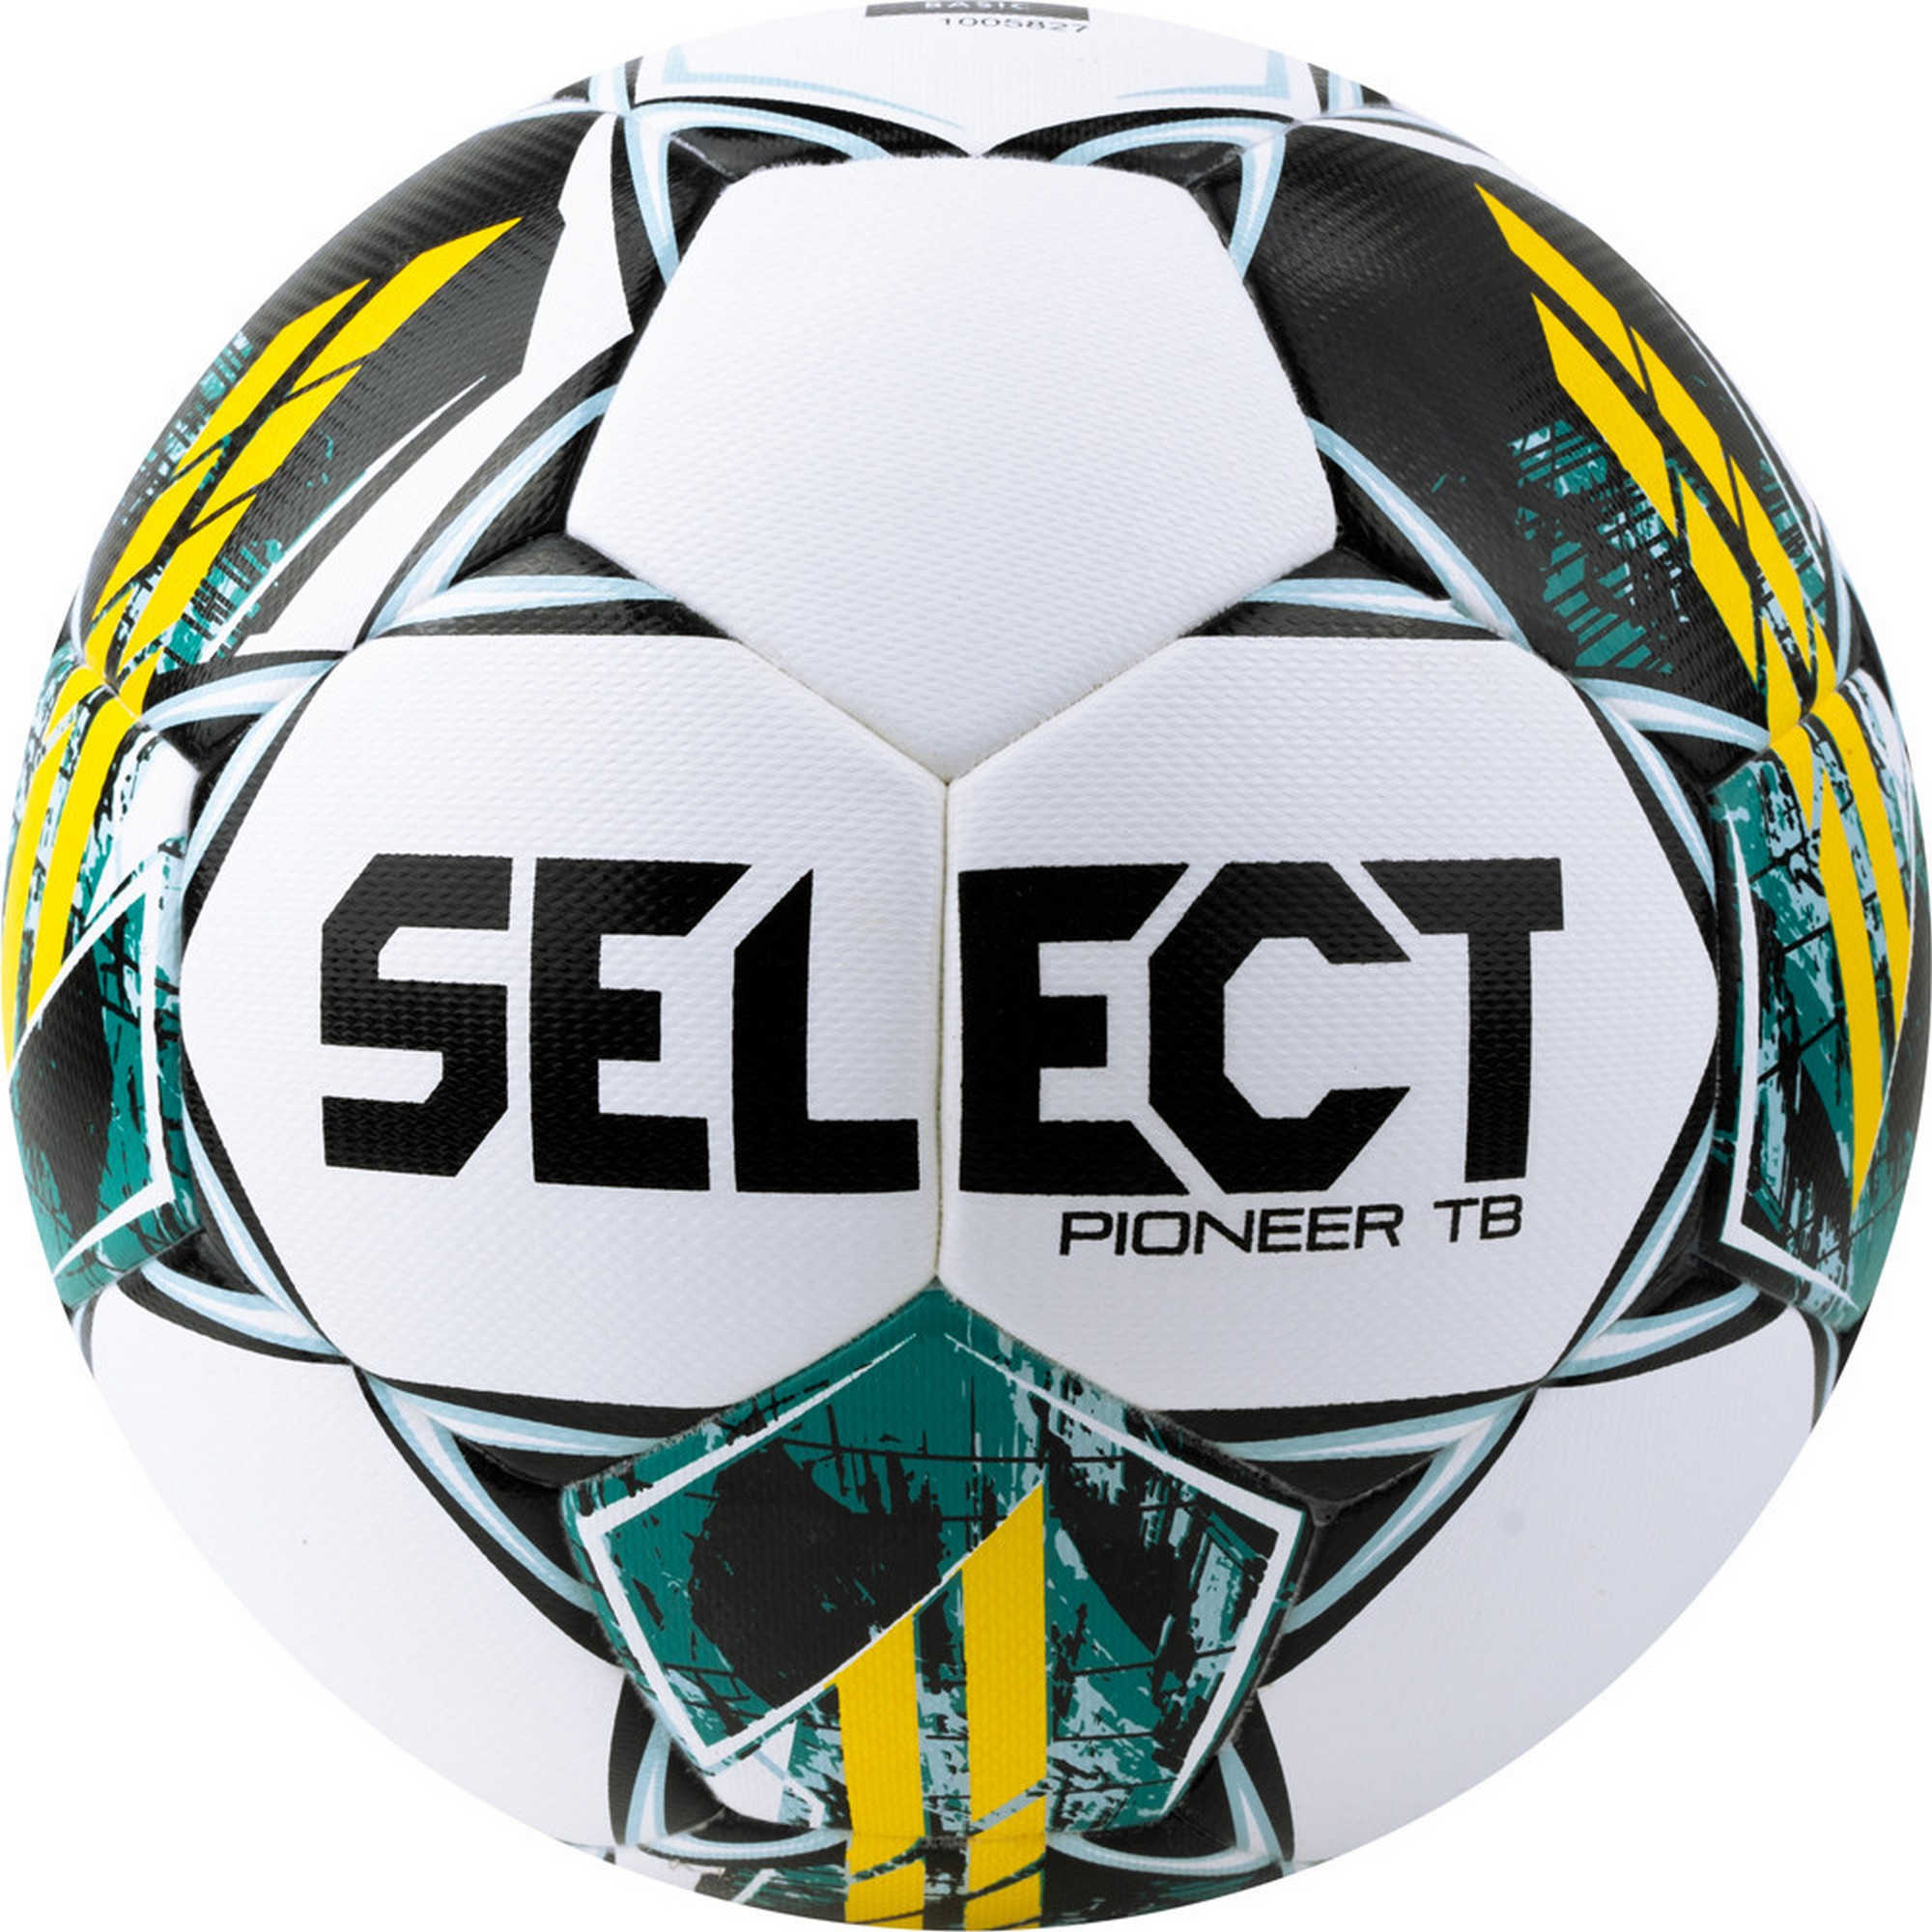 Купить Мяч футбольный Select Pioneer TB V23 0865060005 р.5, FIFA Basic,